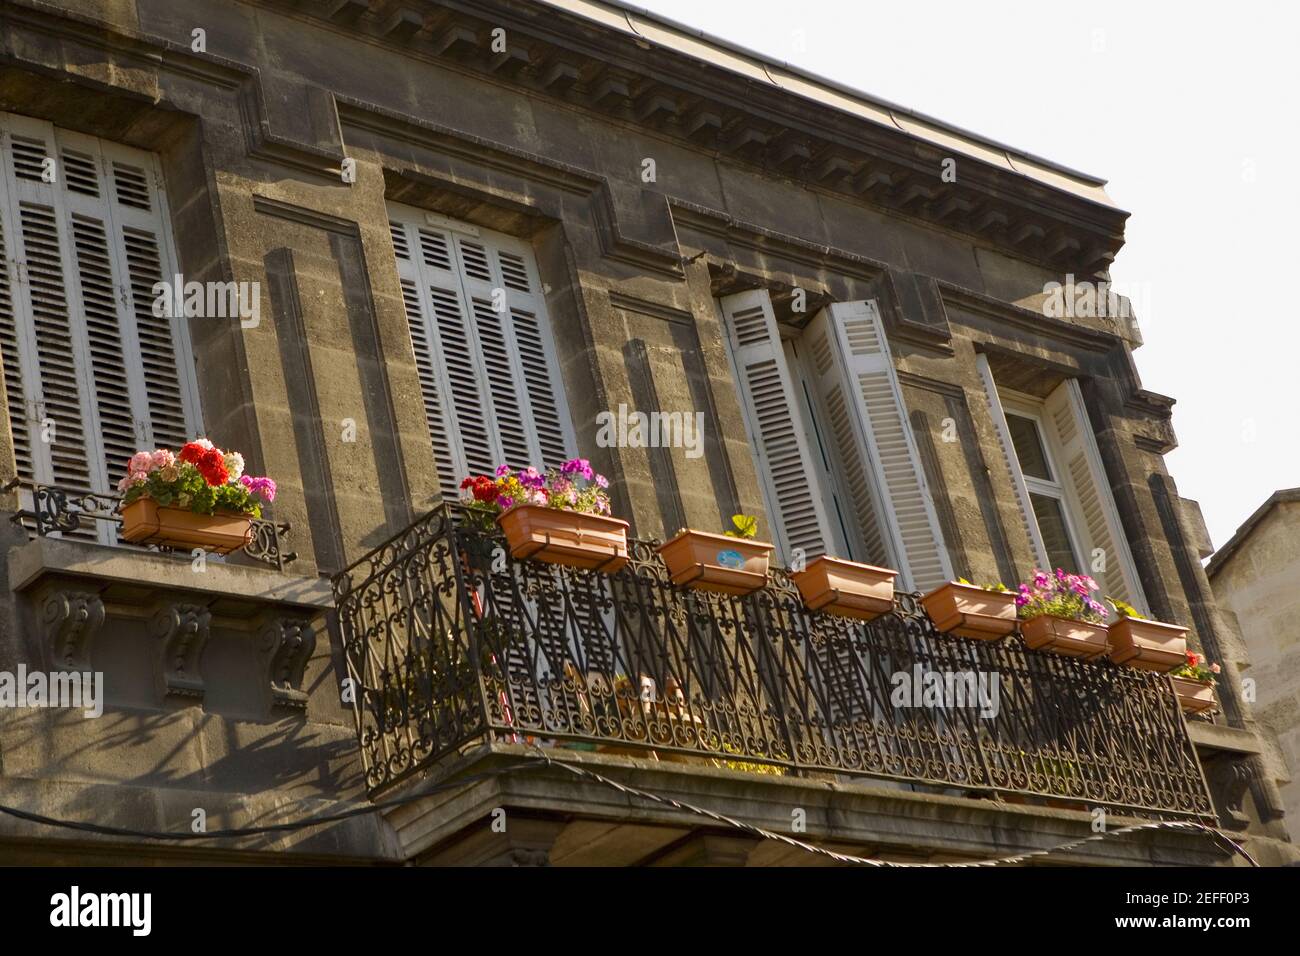 Low angle view of a building, Vieux Bordeaux, Bordeaux, France Stock Photo